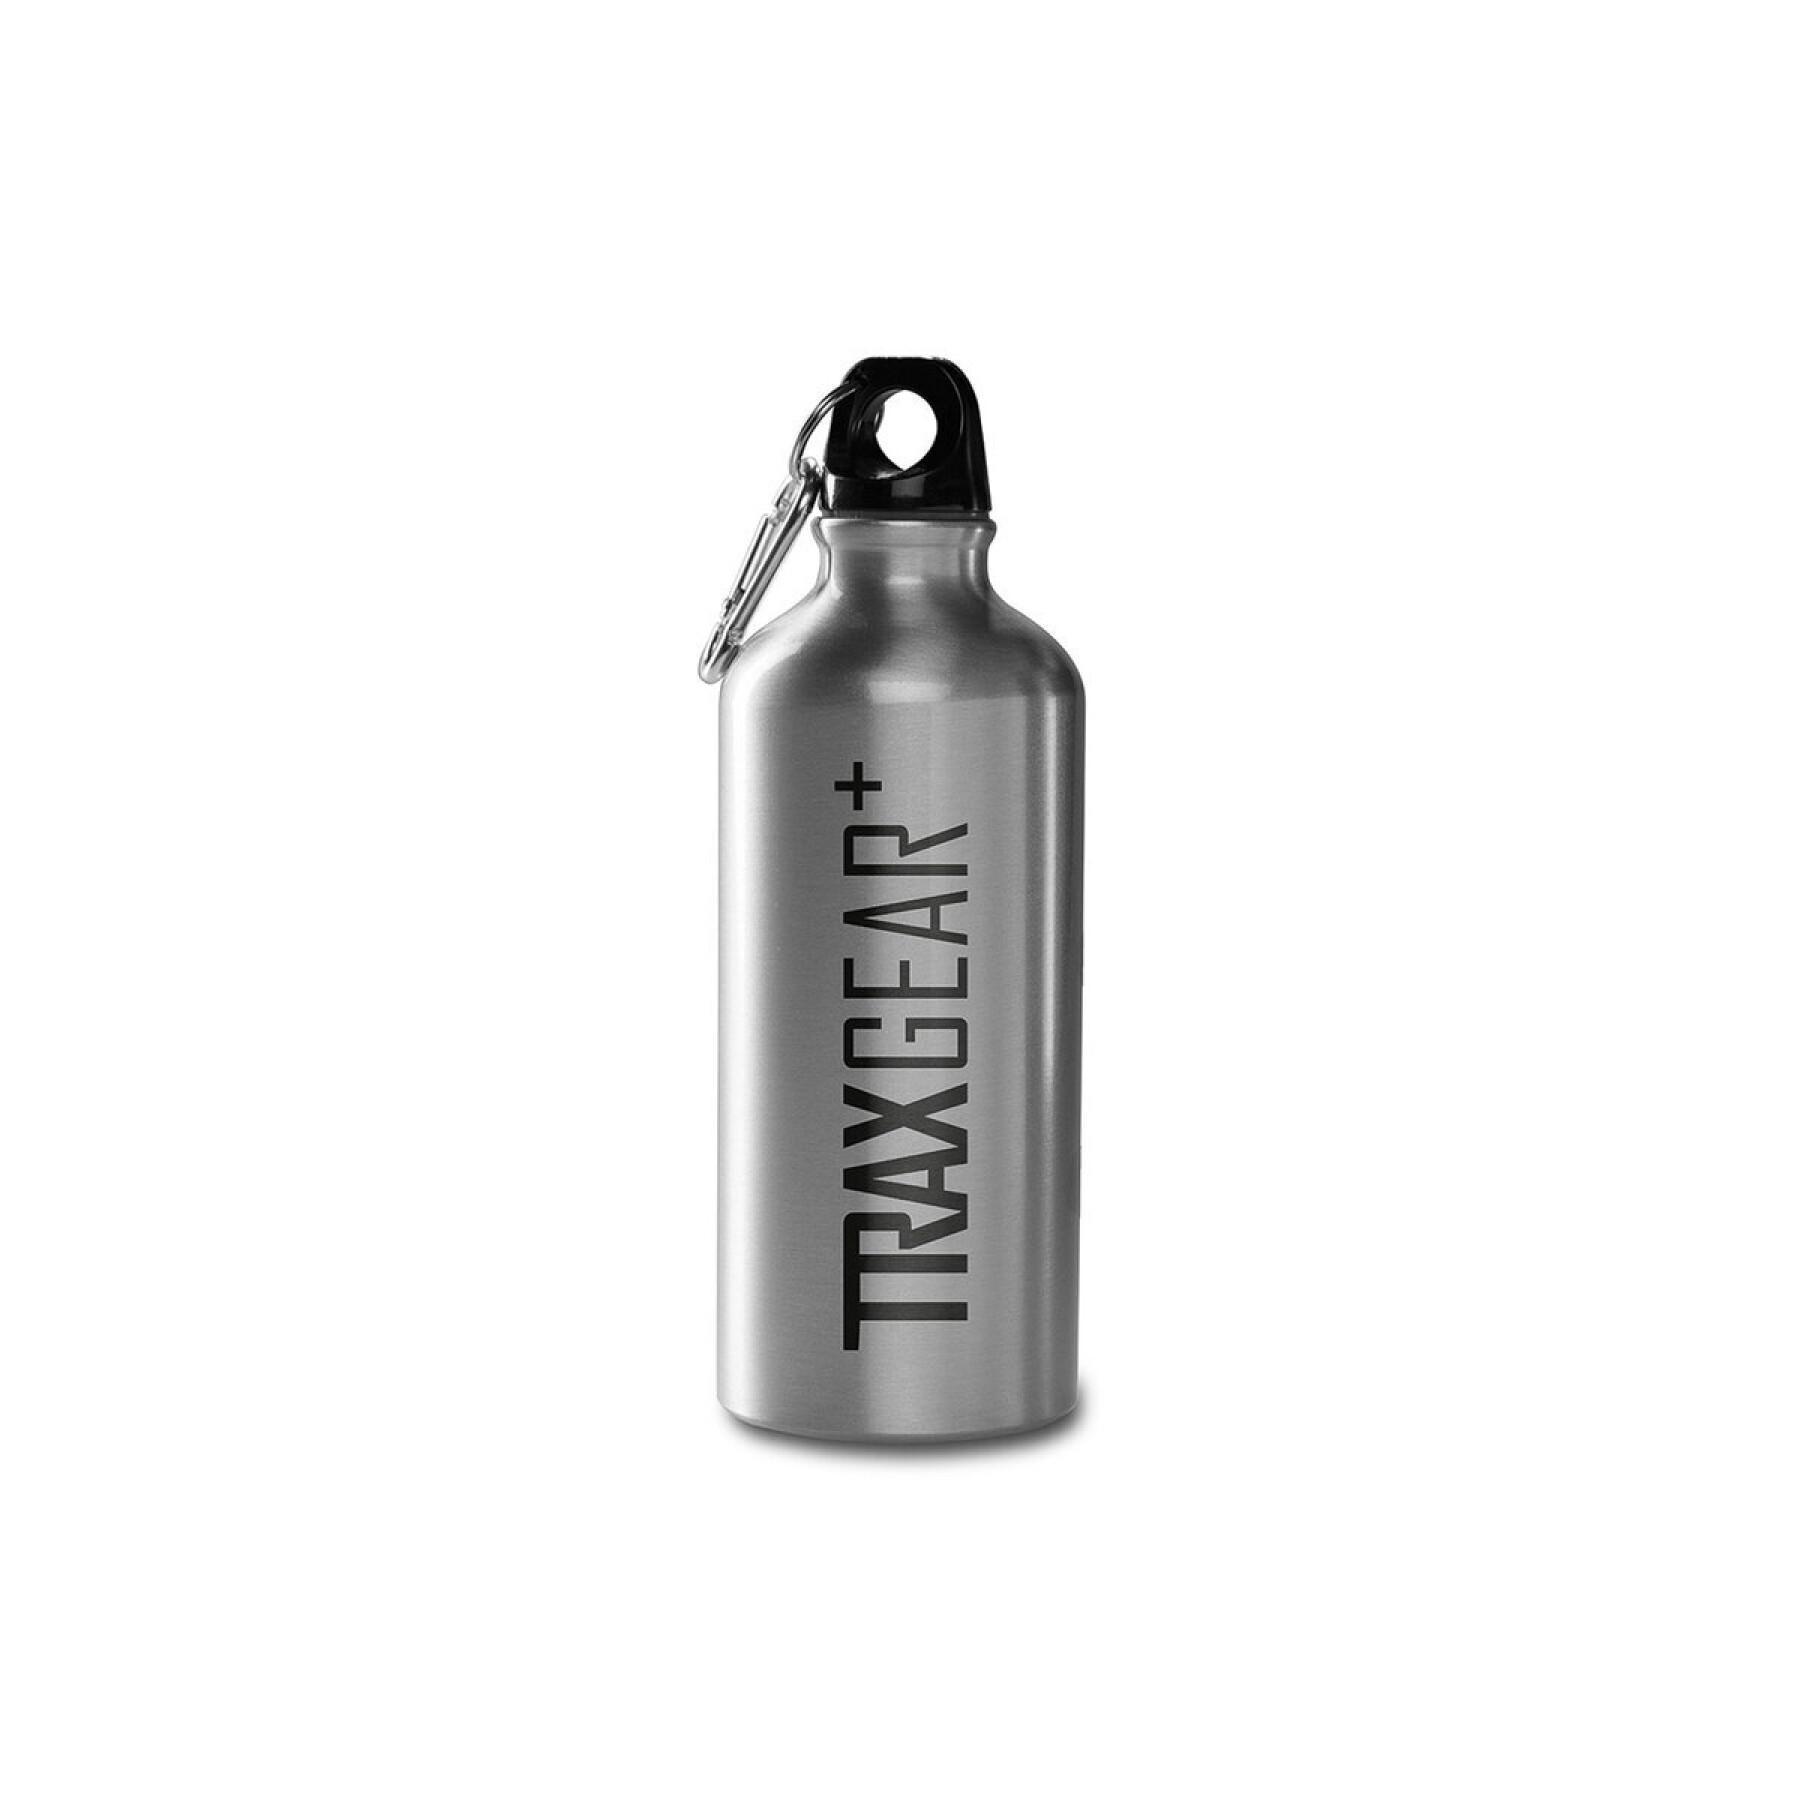 Stainless steel water bottle SW-Motech